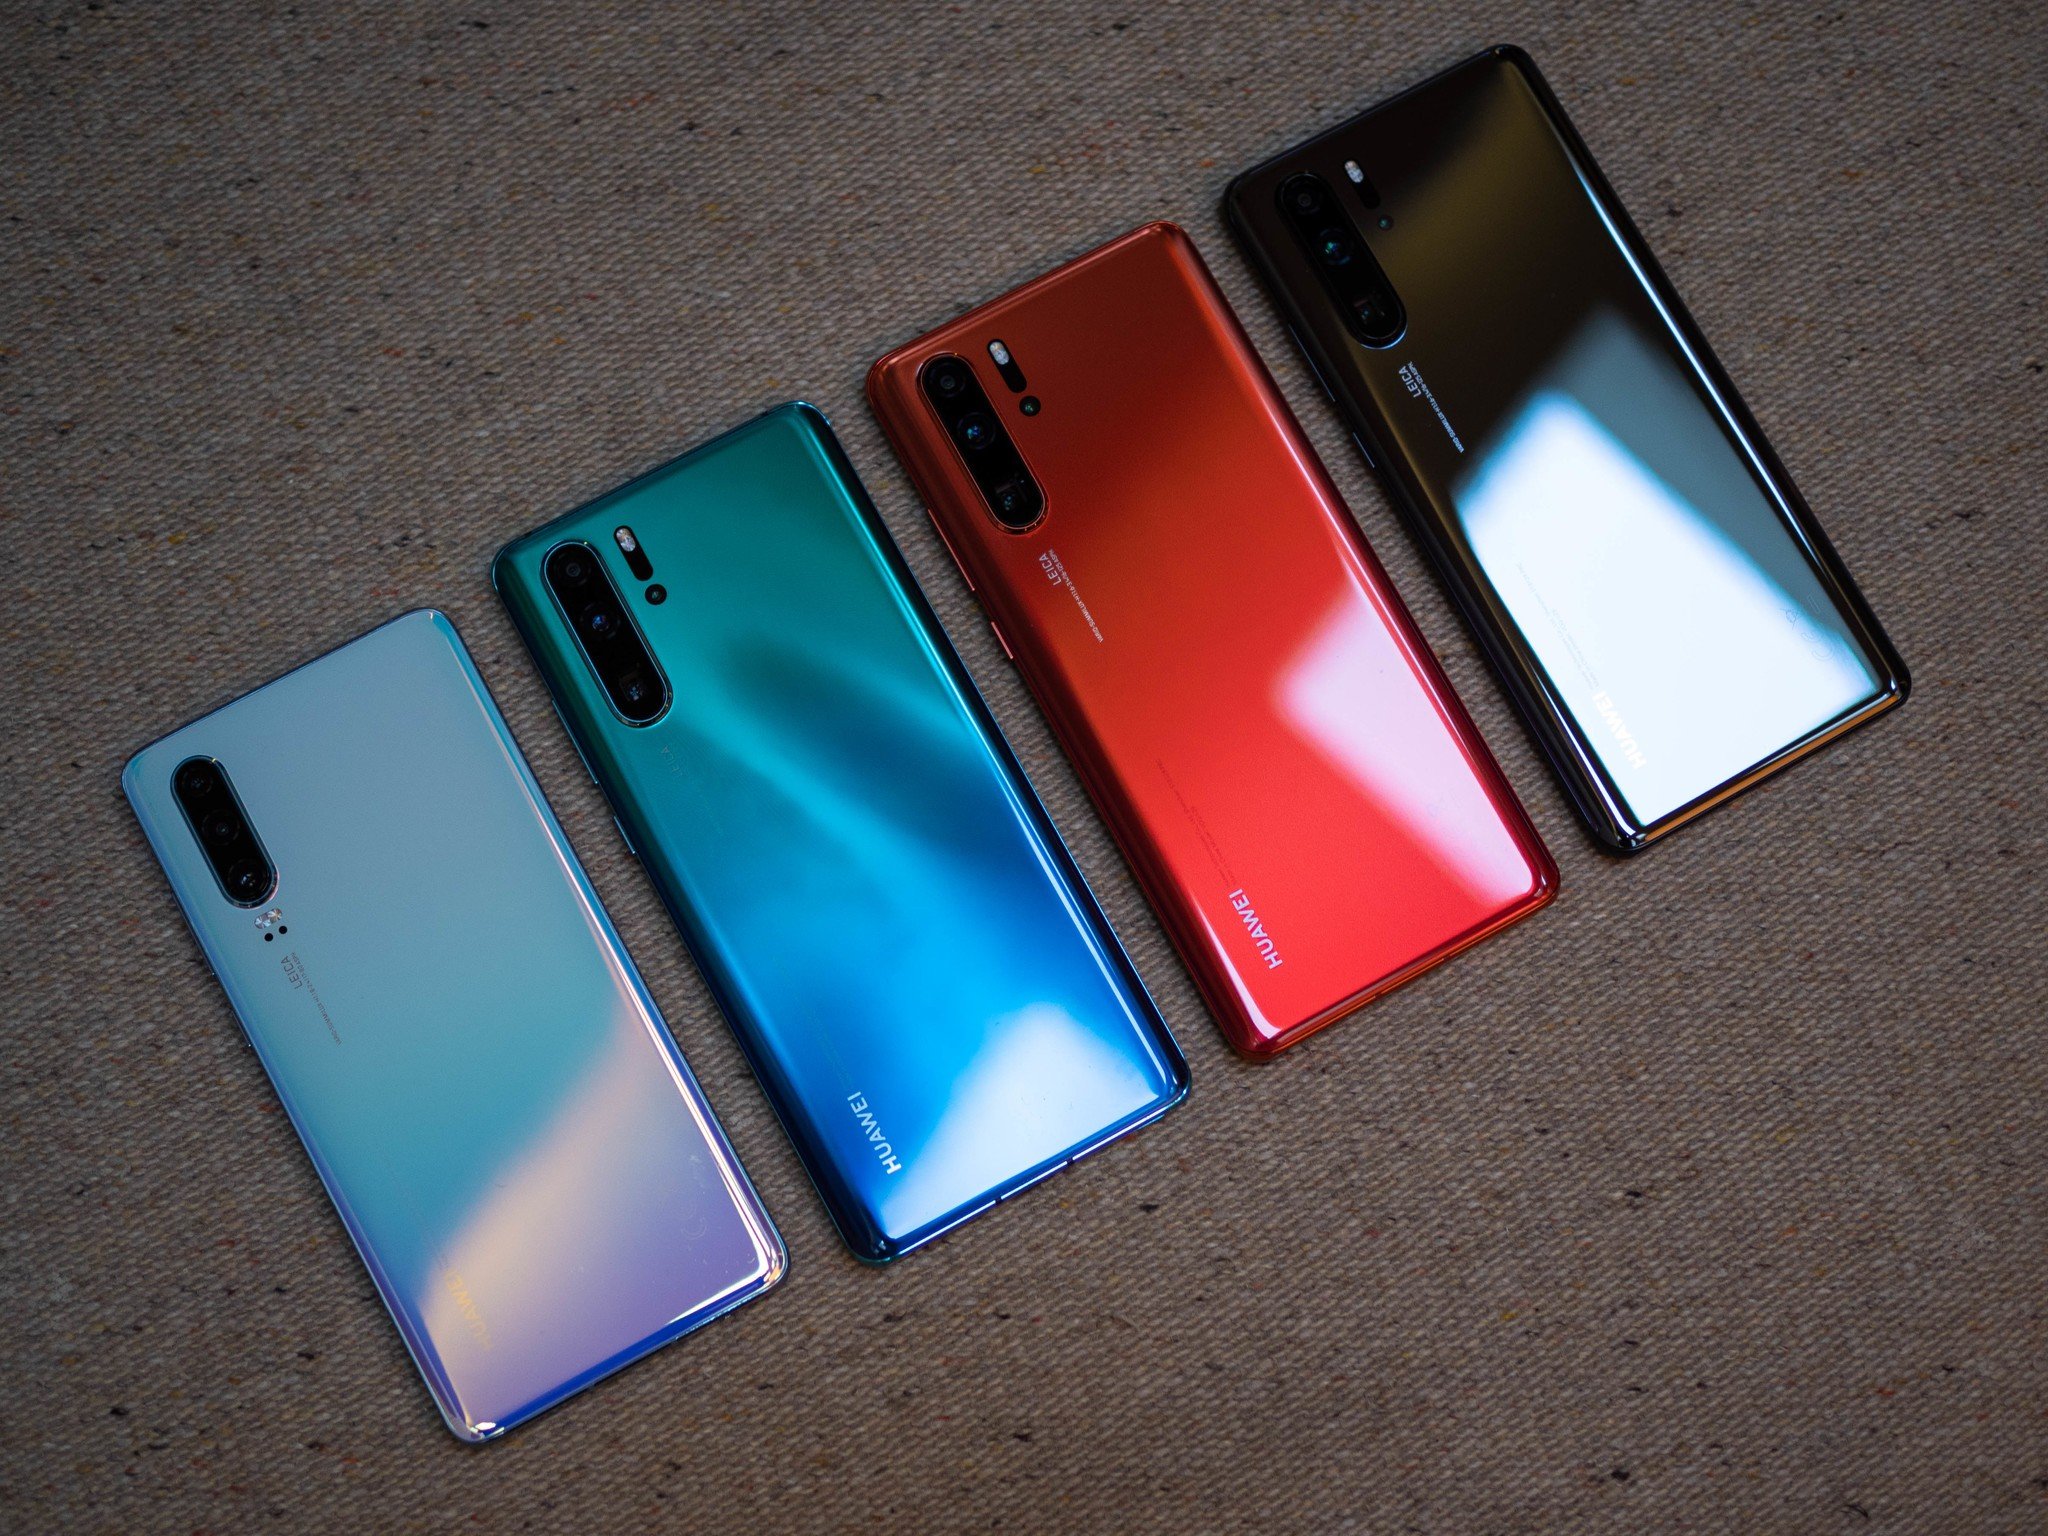 Huawei p30 оригинал. Huawei p30 Colors. Huawei p30 Pro цвета. Хуавей п30 про цвета. P30 Pro цвета.